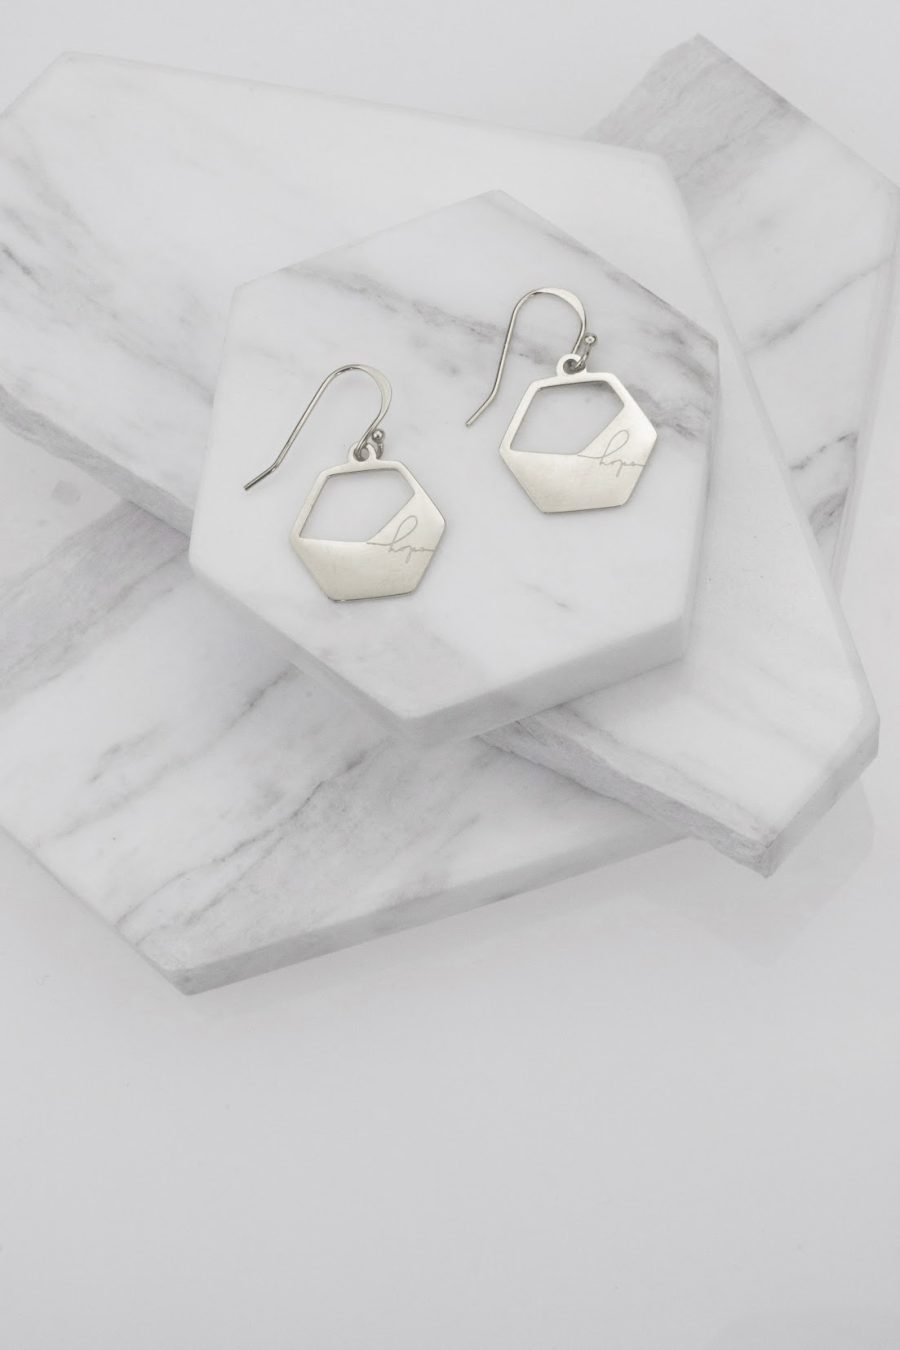 eden hope in a hexagon haymar earrings silver on marble